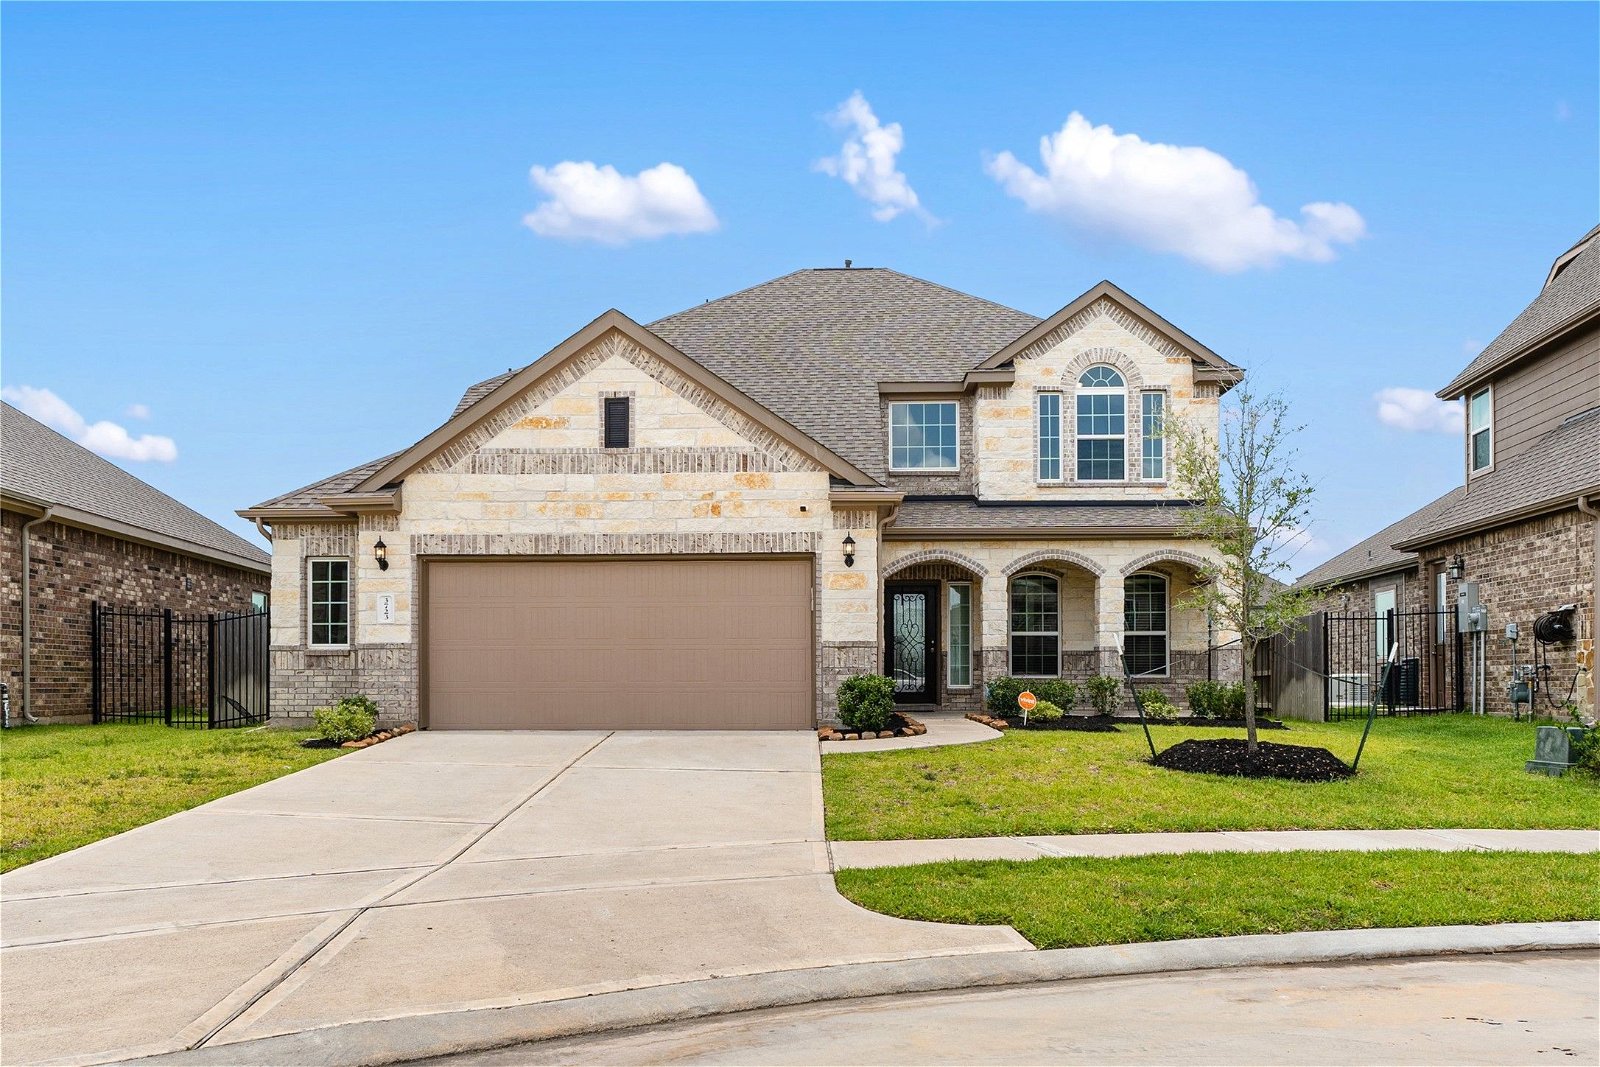 Real estate property located at 3723 Lake Varano, Harris, Katy, TX, US